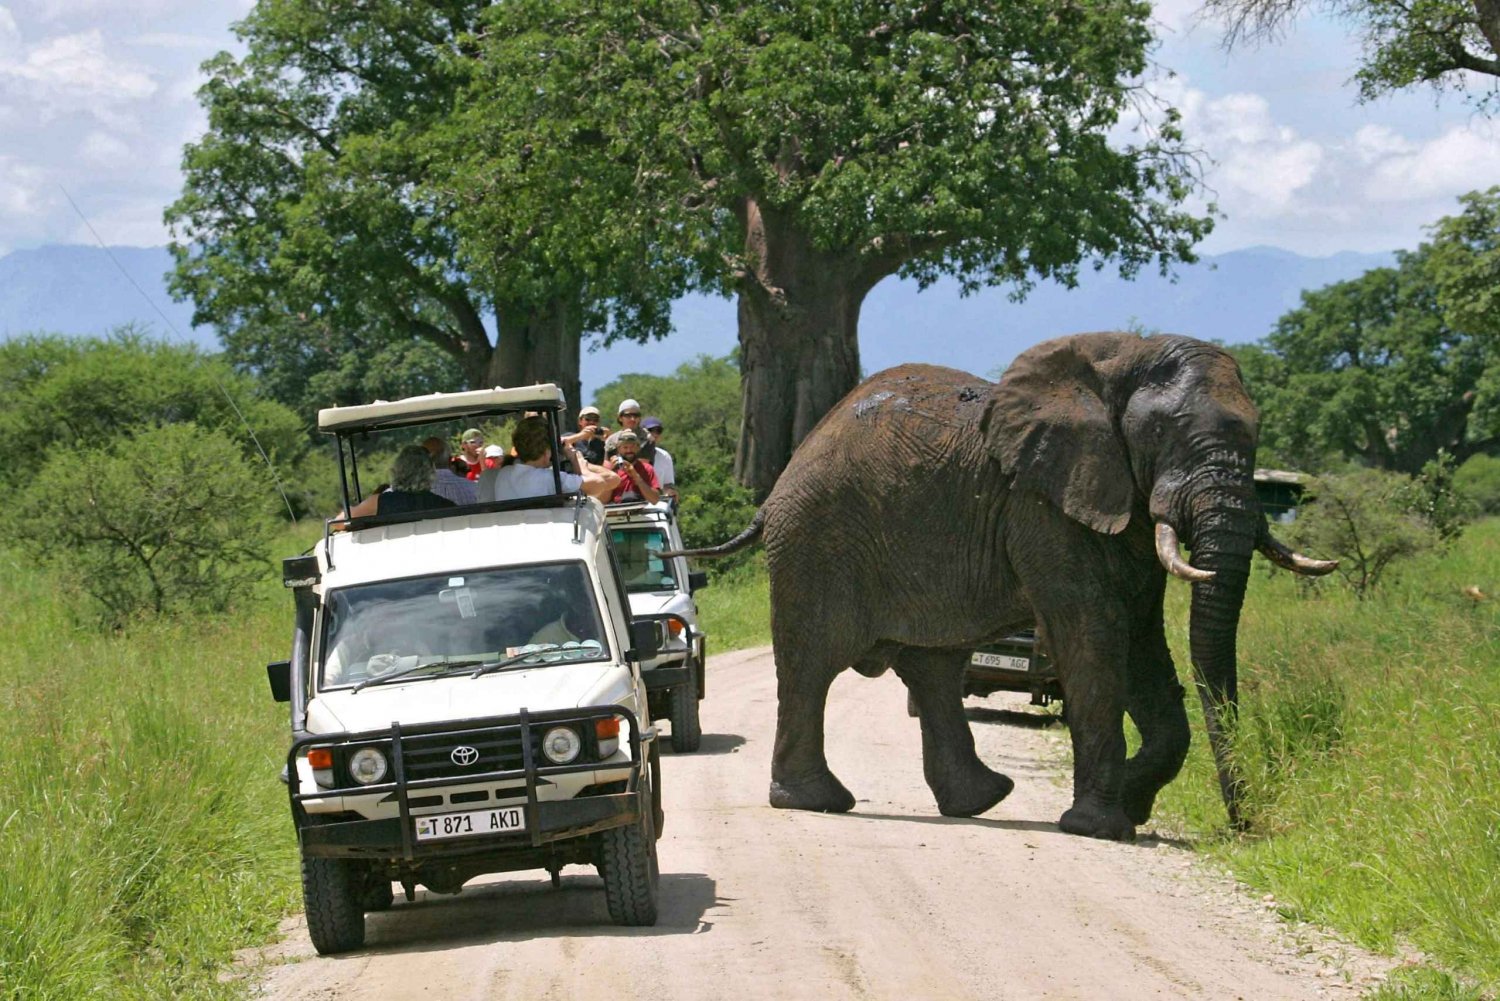 Arusha: Safari animalier d'une journée au parc national de Tarangire